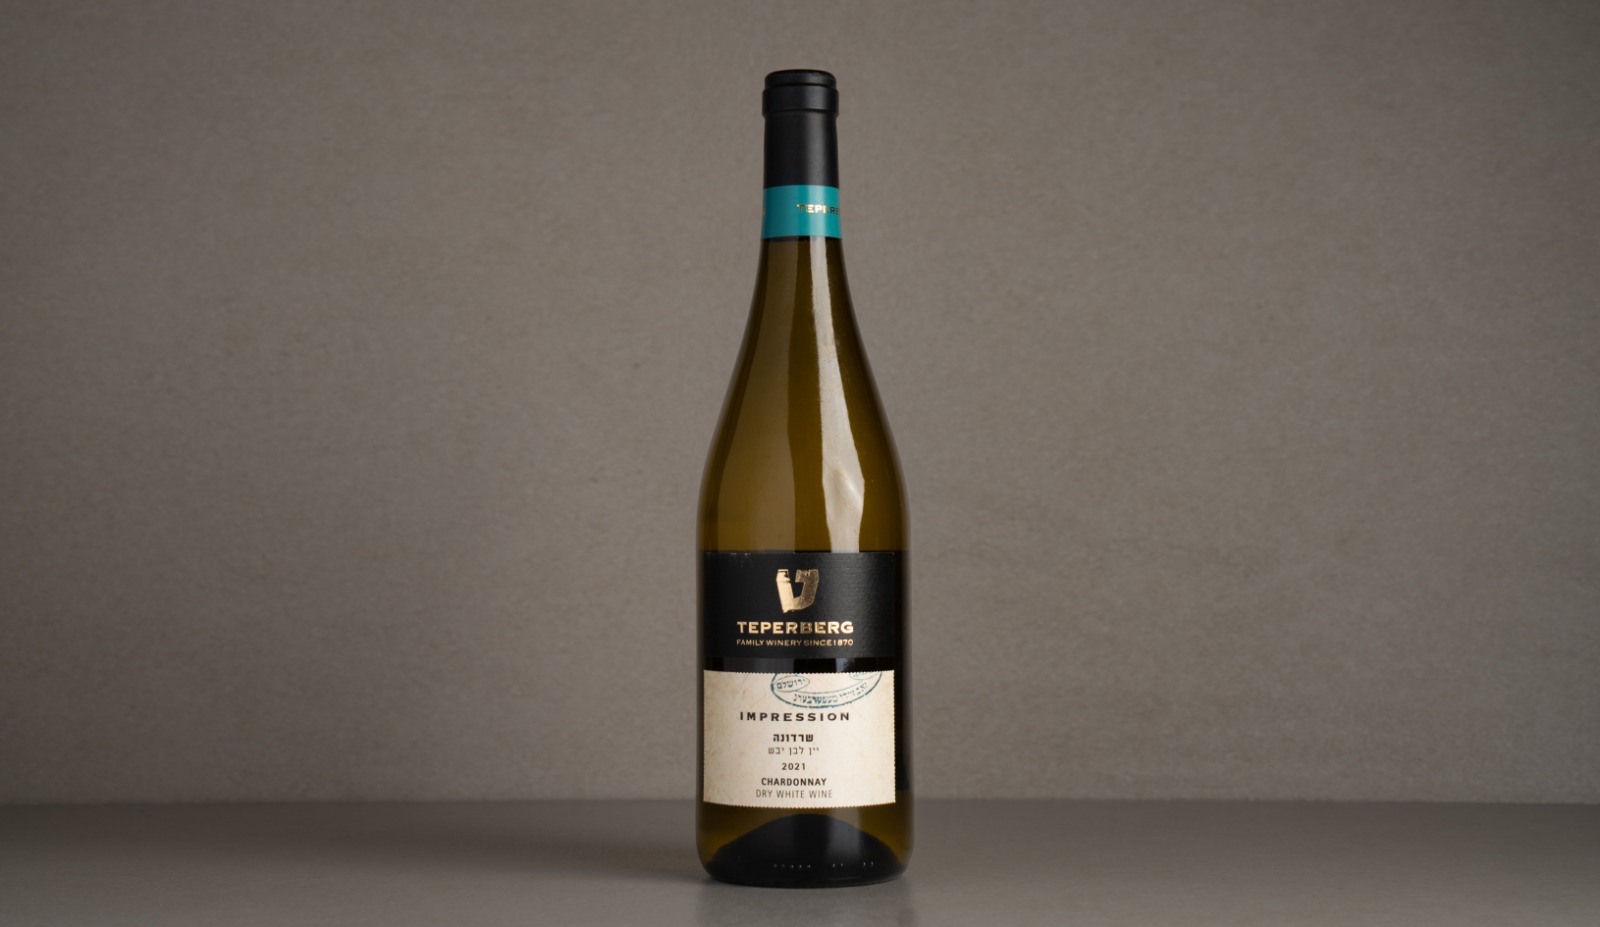 יין לבן יבש "טפרברג" שרדונה 2021